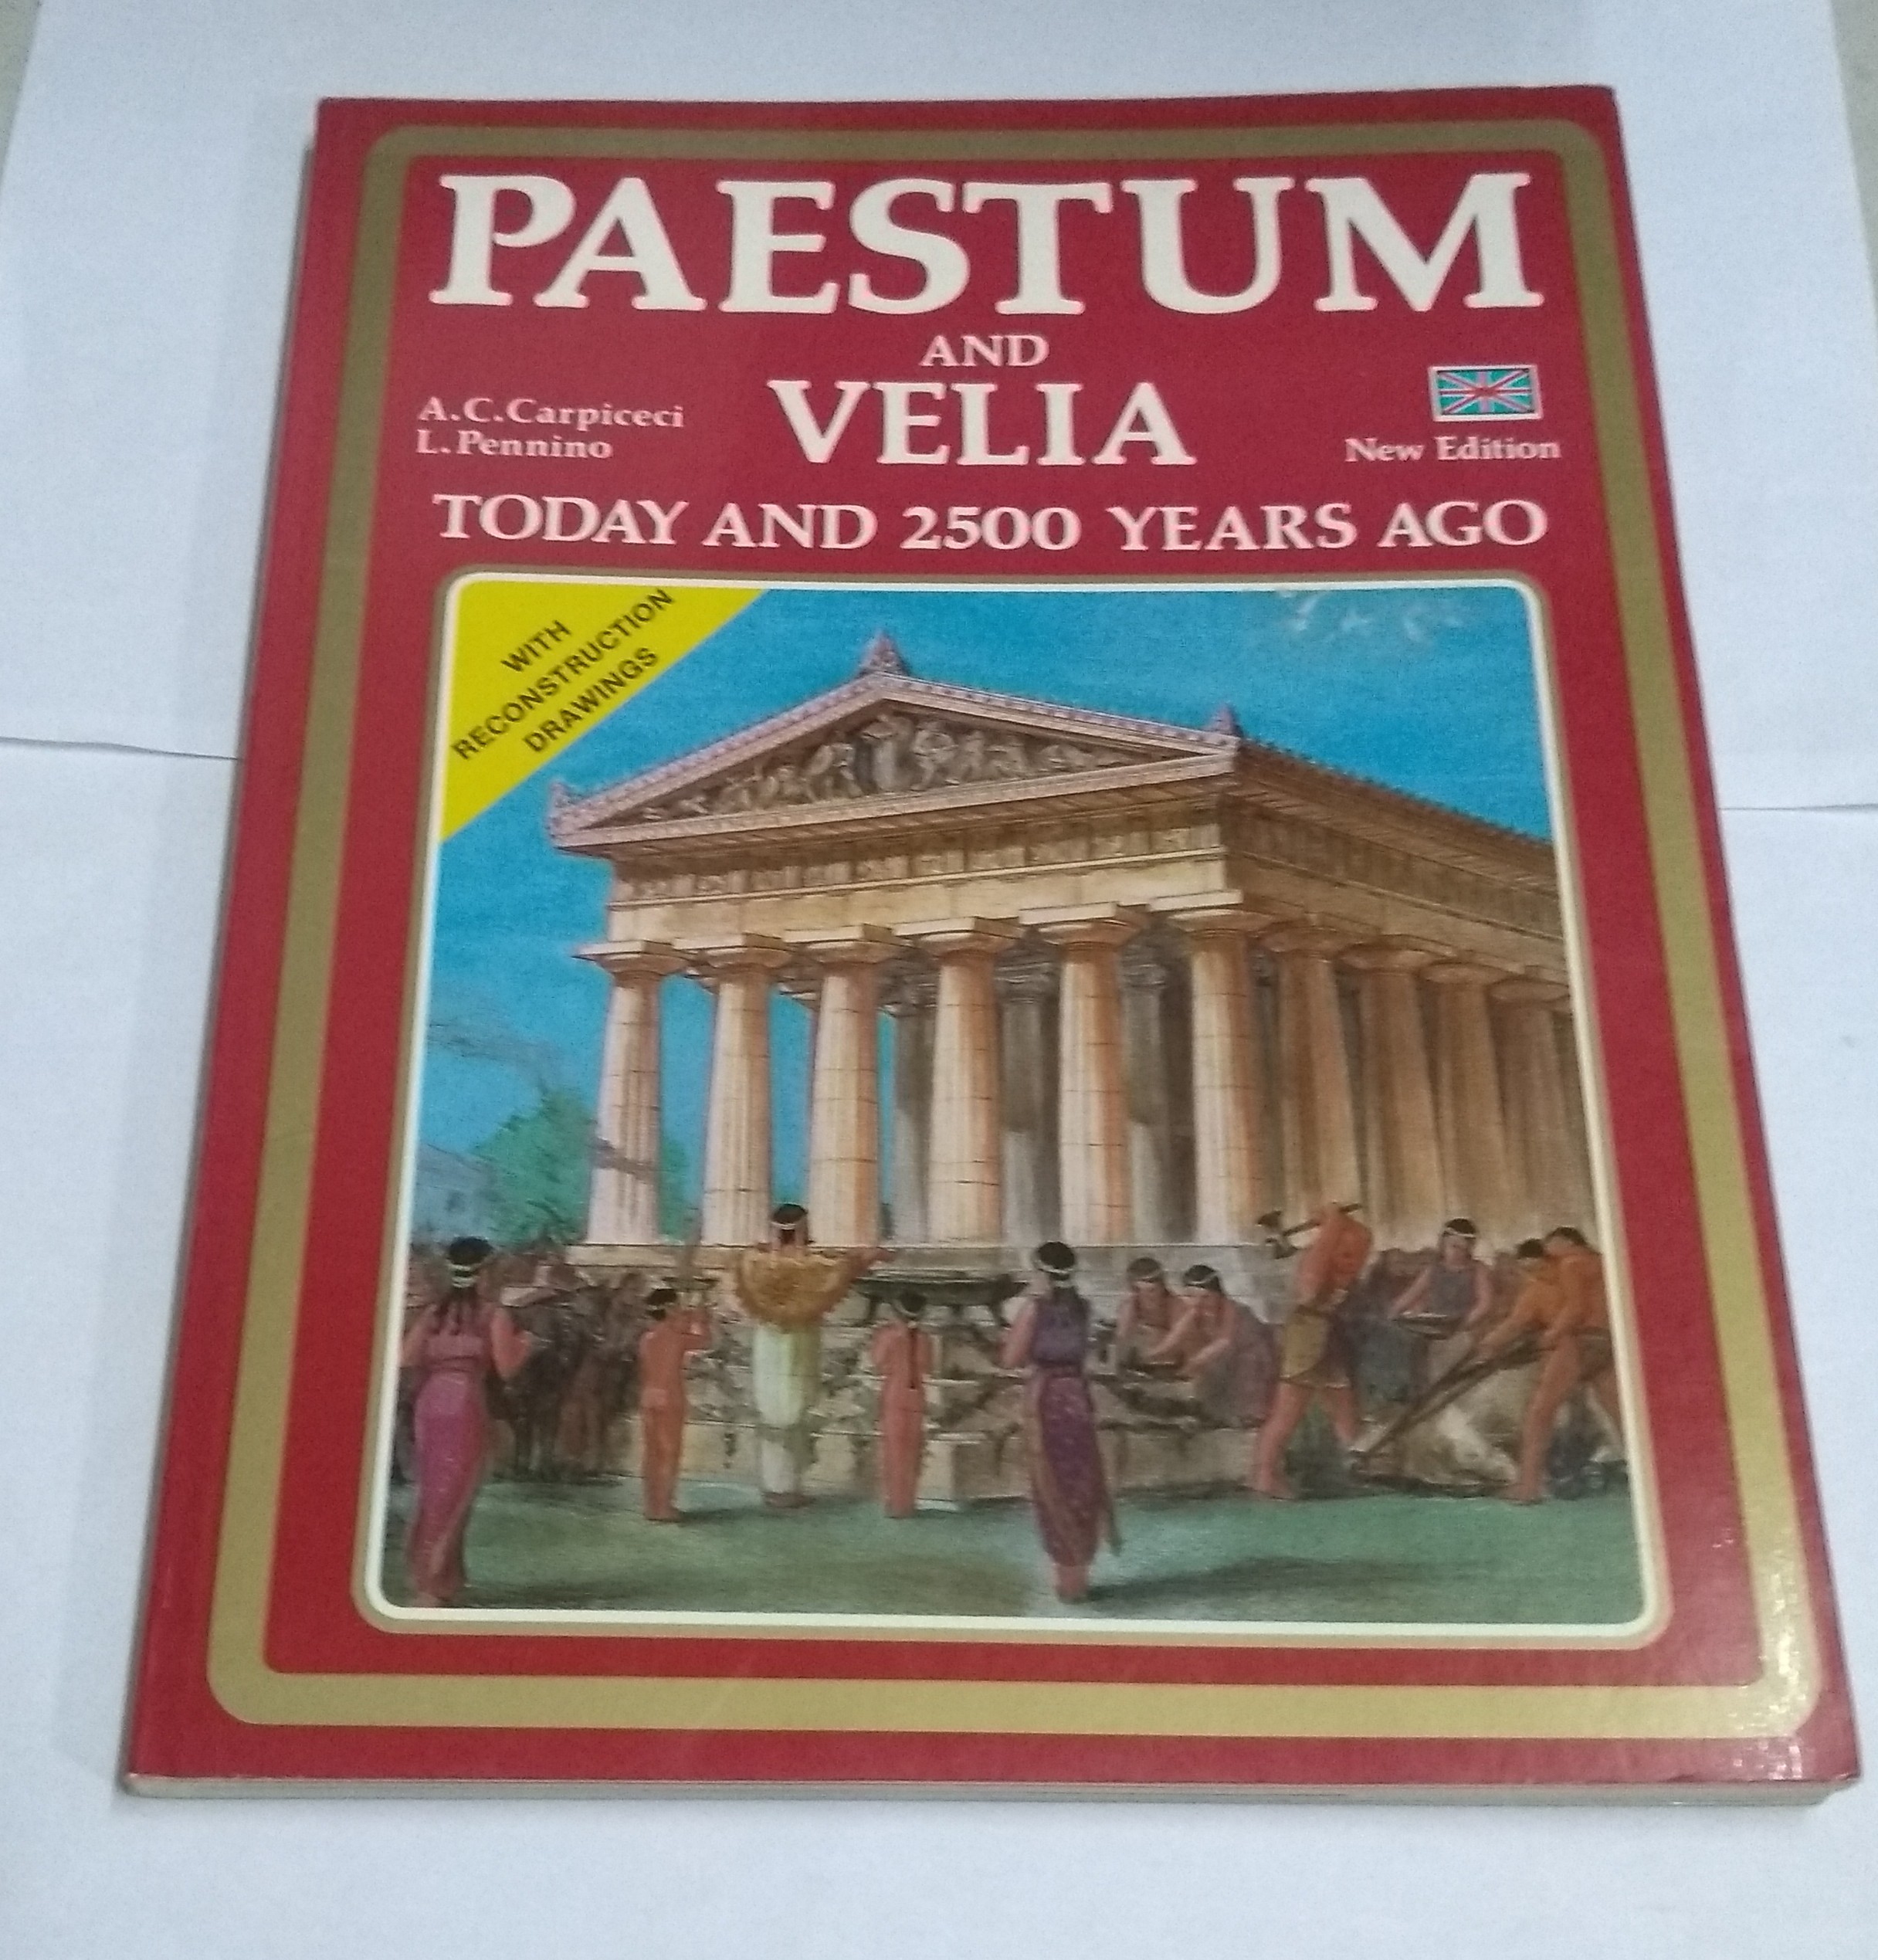 Paestum and Velia